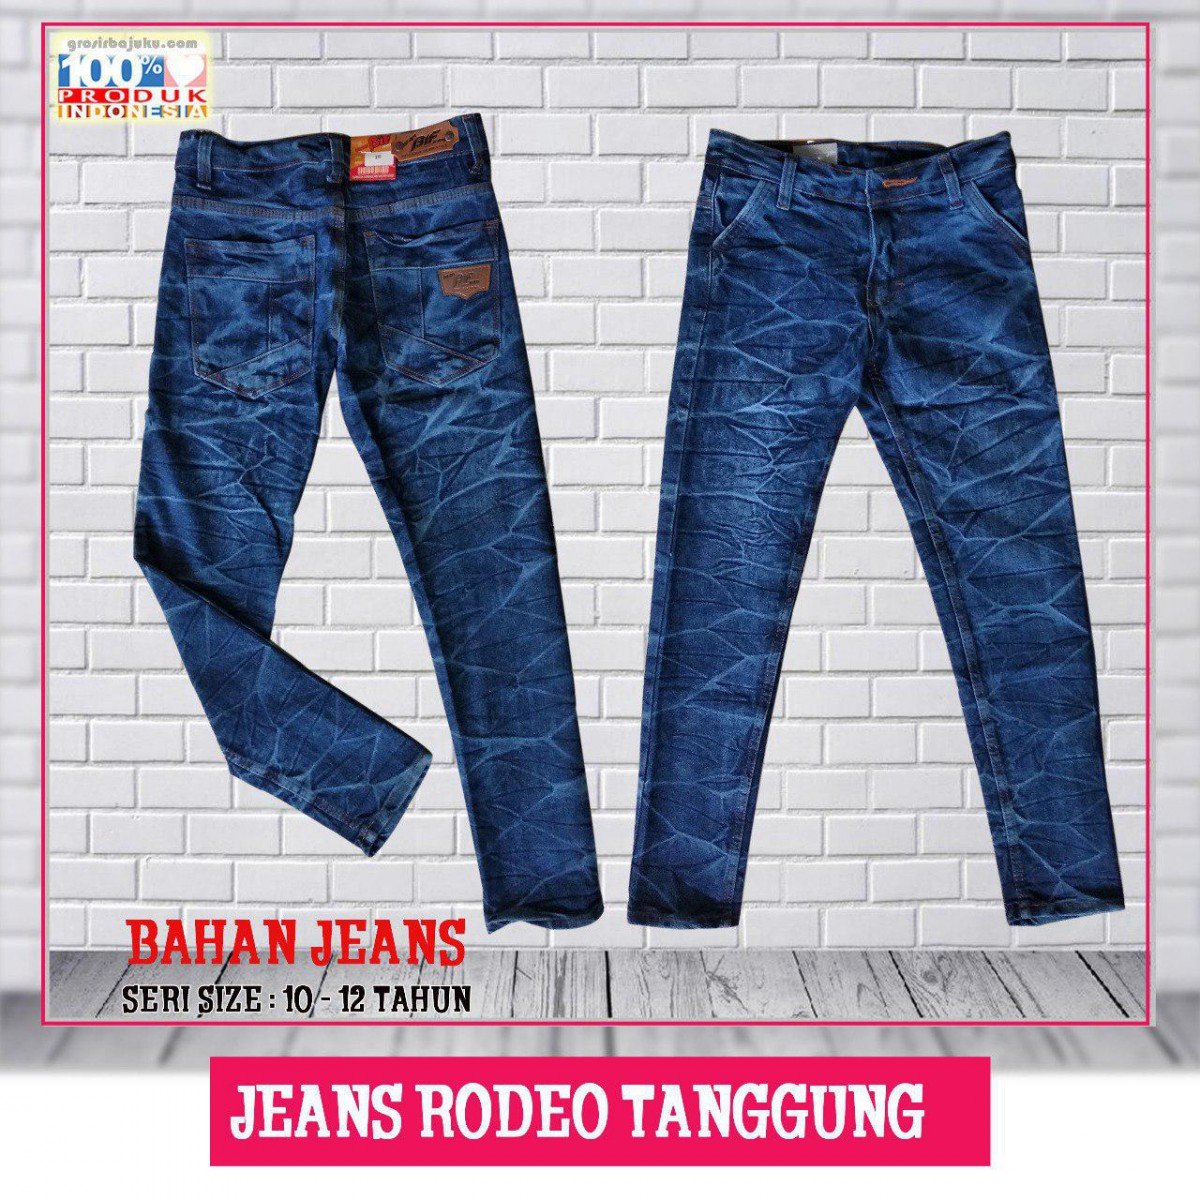 Jeans Rodeo Tanggung